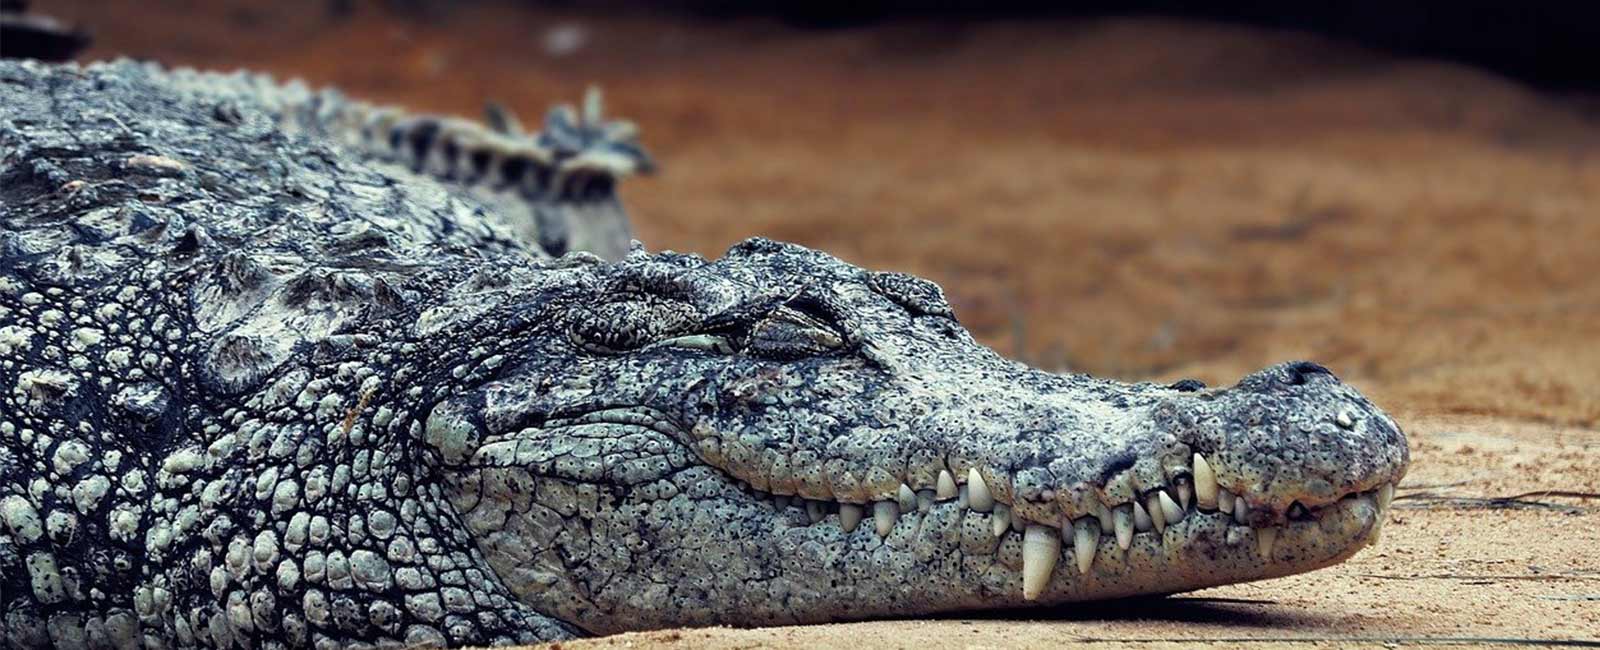 Krokodilleder-Tasche: Krokodile für Luxushandtaschen gehäutet